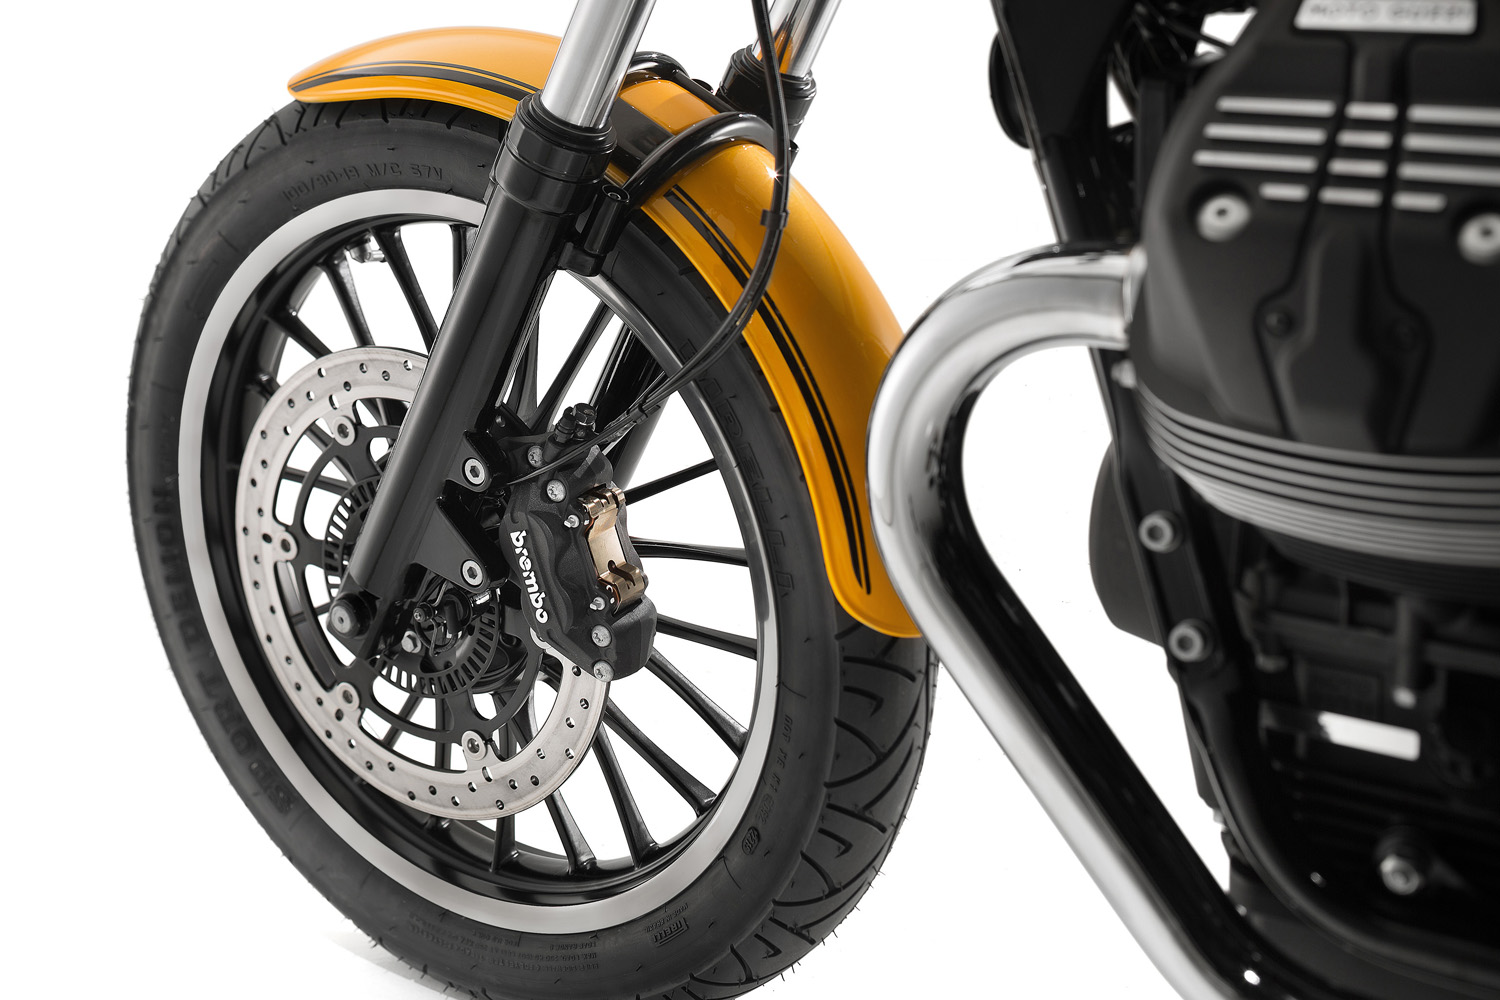 Moto Guzzi V9 Roamer front wheel disk view